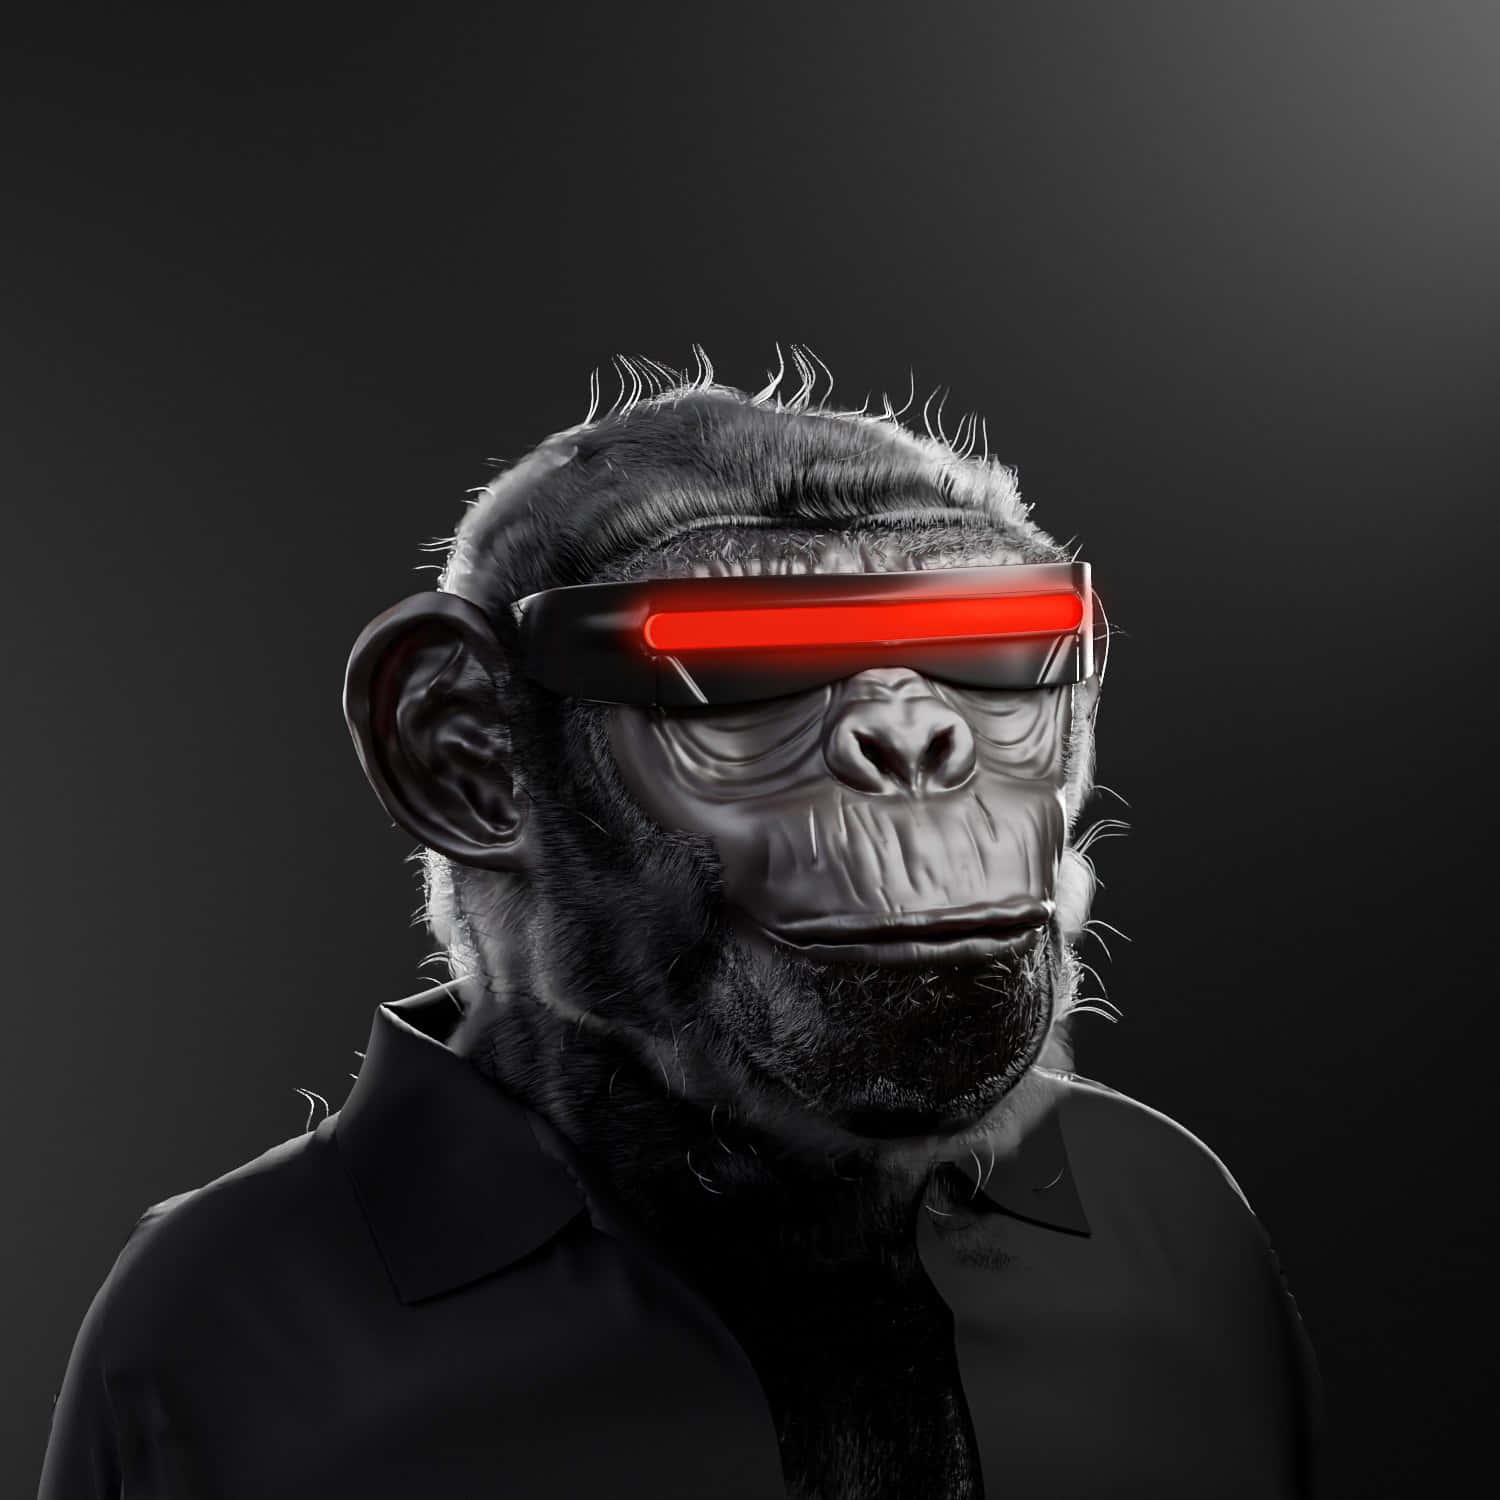 Einschimpanse Trägt Rote Brille Und Ein Rotes Licht. Wallpaper